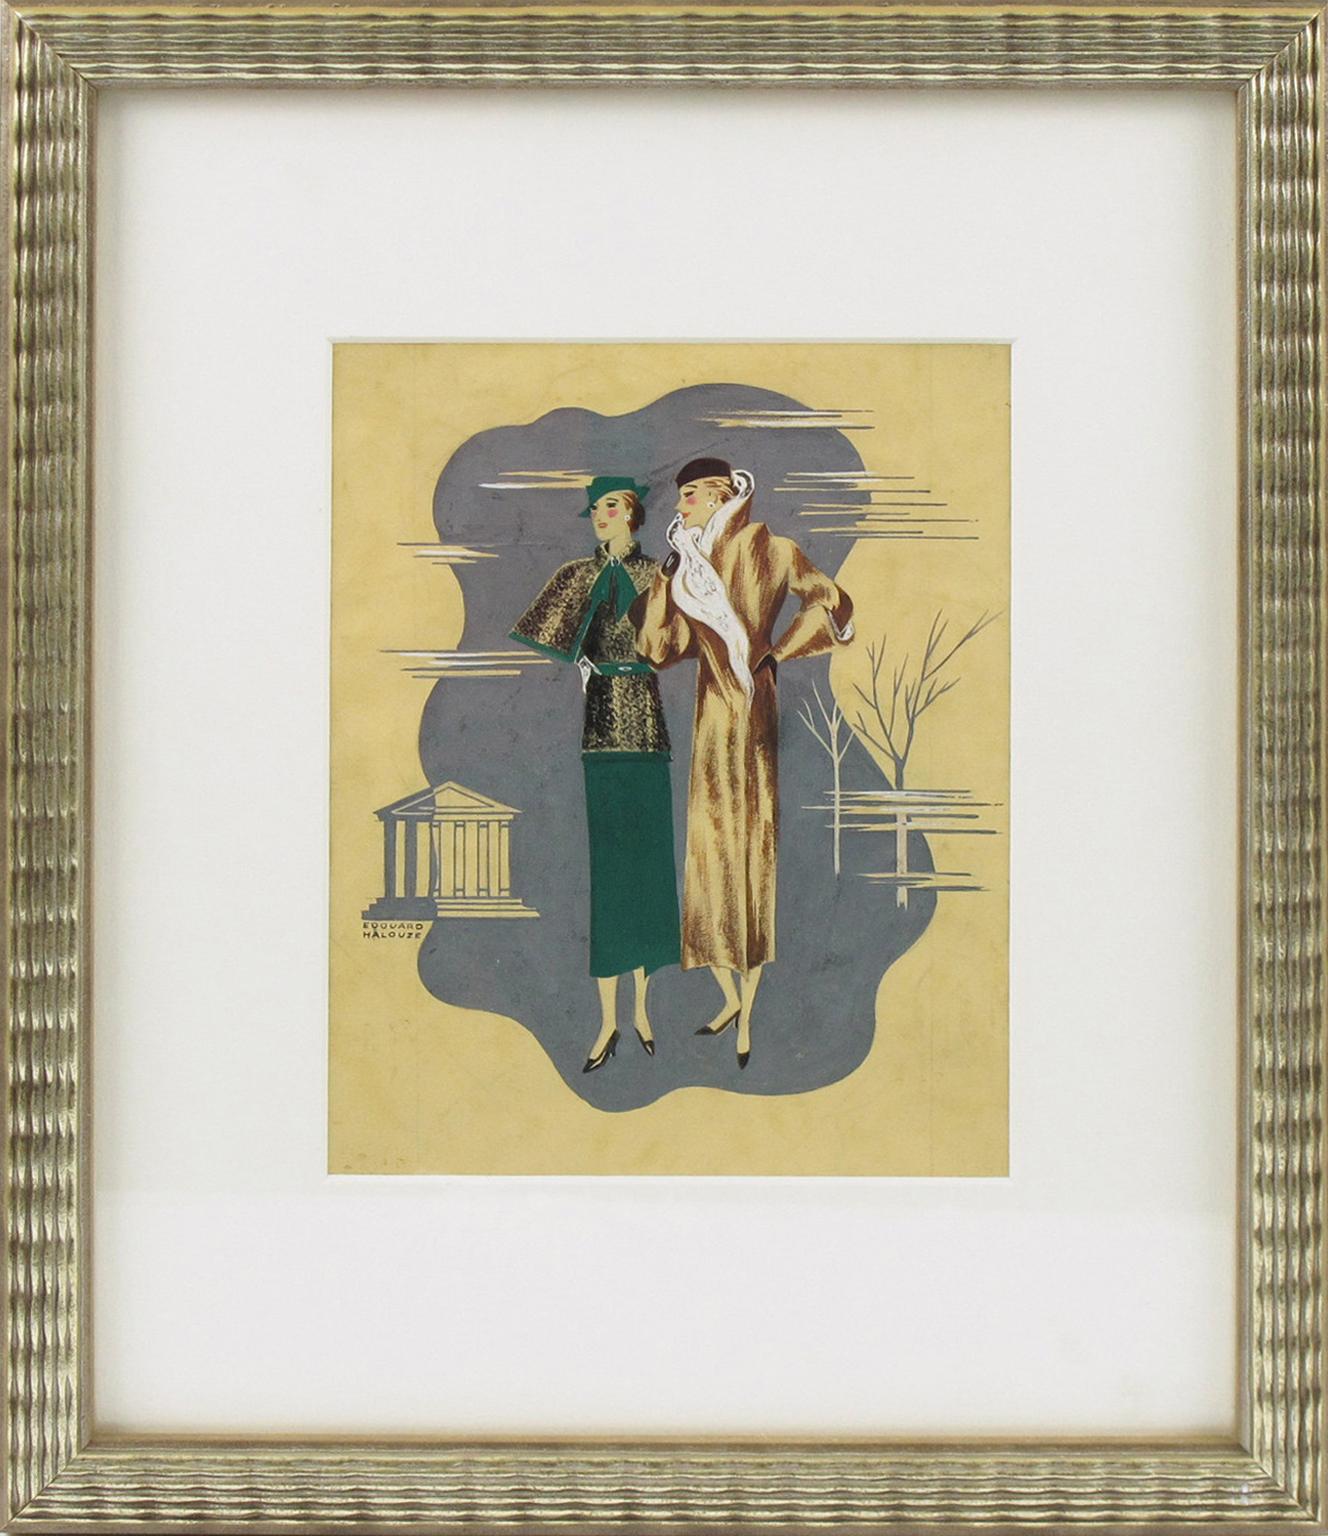 Il s'agit d'un dessin d'illustration original Art déco, peint à la main à l'encre et à la gouache sur papier, conçu par l'artiste français Edouard Halouze. L'œuvre d'art présente deux mannequins féminins élégants avec des tenues élégantes. La pièce